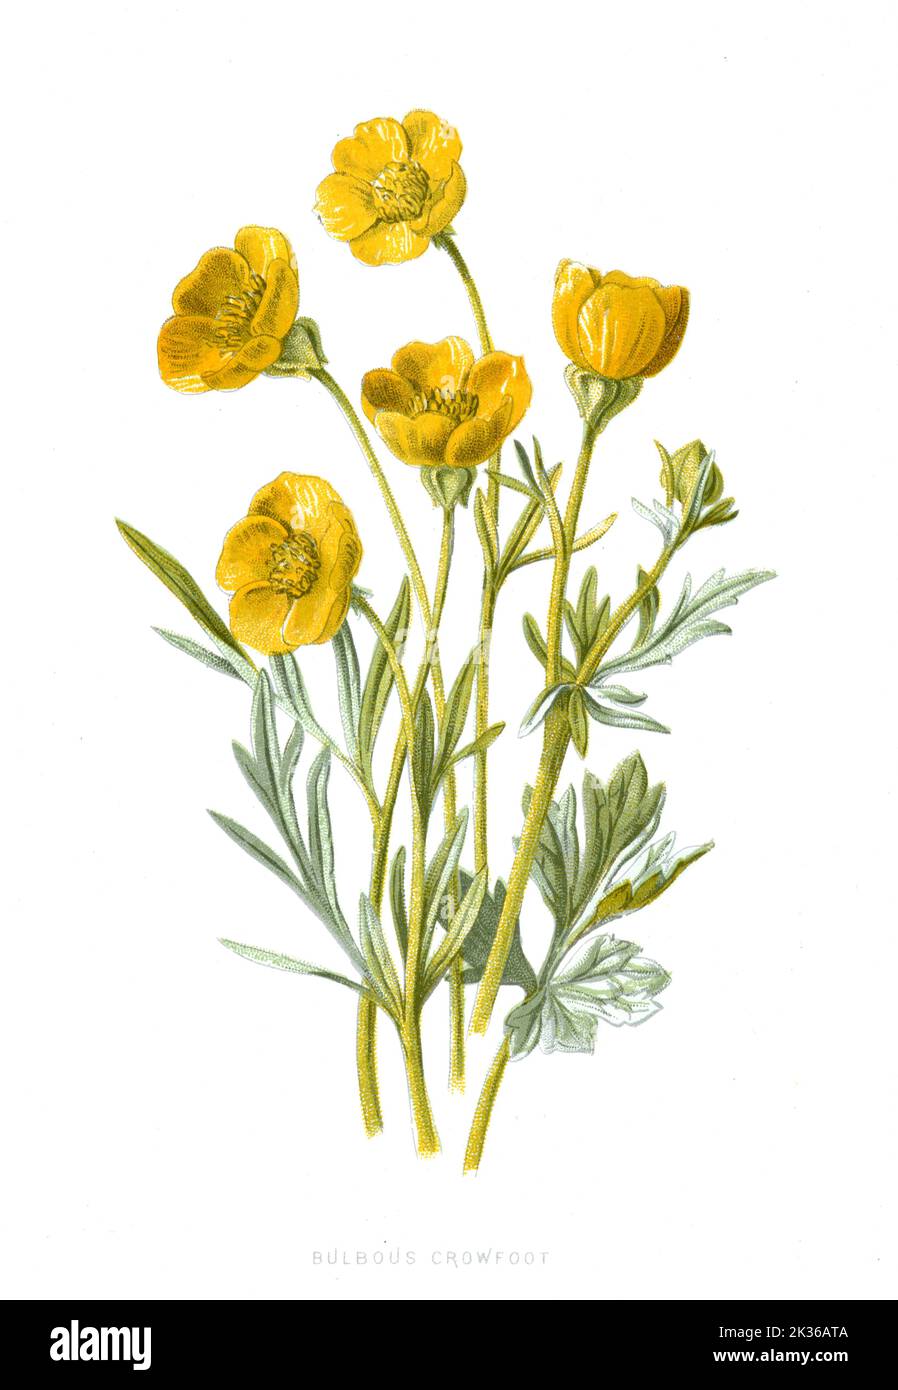 Bulbous Crowfoot Flower viktorianische Ära 19. Jahrhundert Illustration Stockfoto